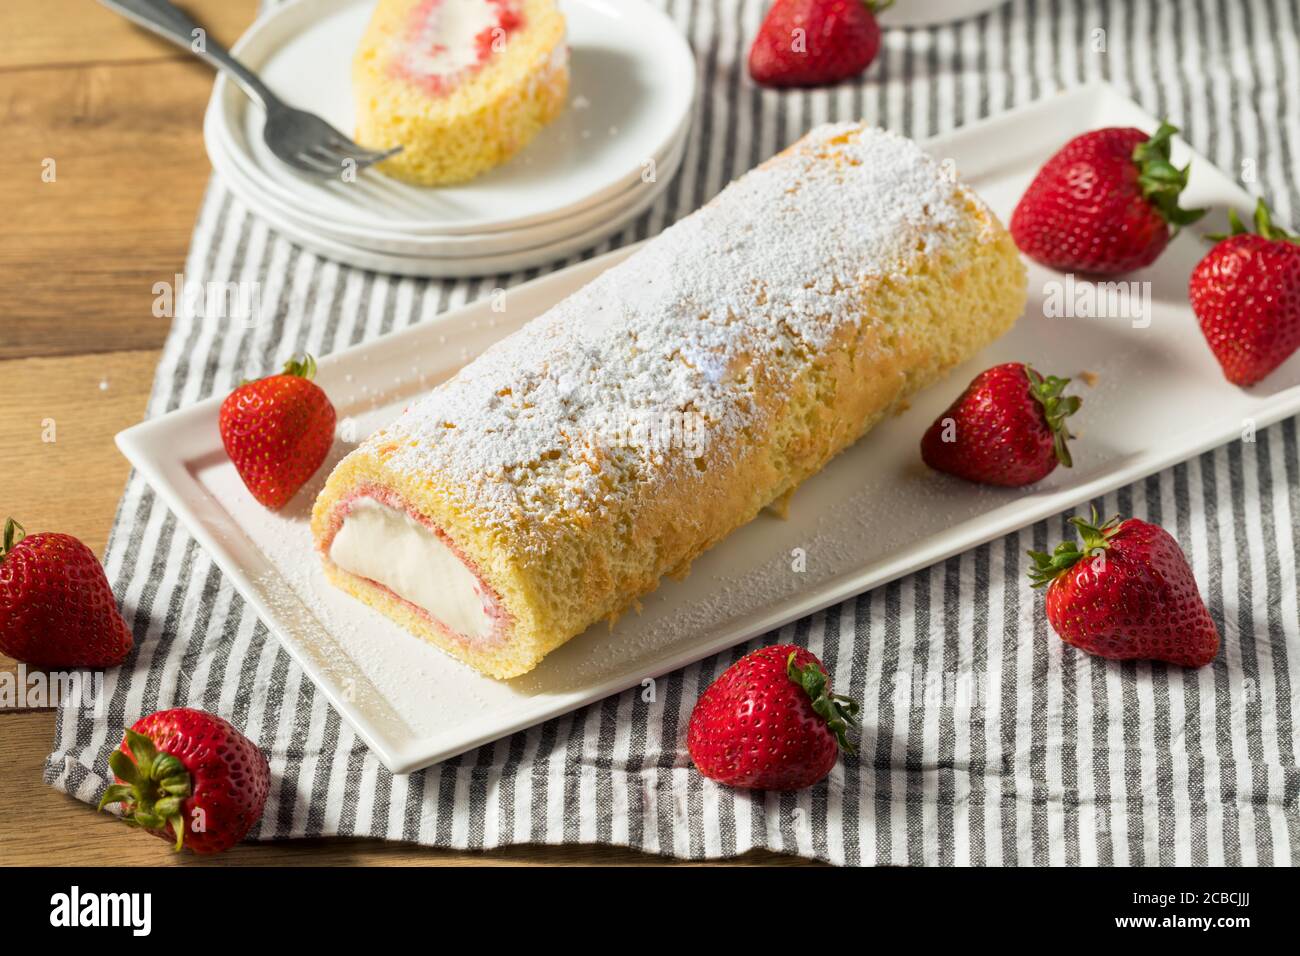 Gâteau au rouleau Artic congelé maison avec crème glacée et fraises Banque D'Images